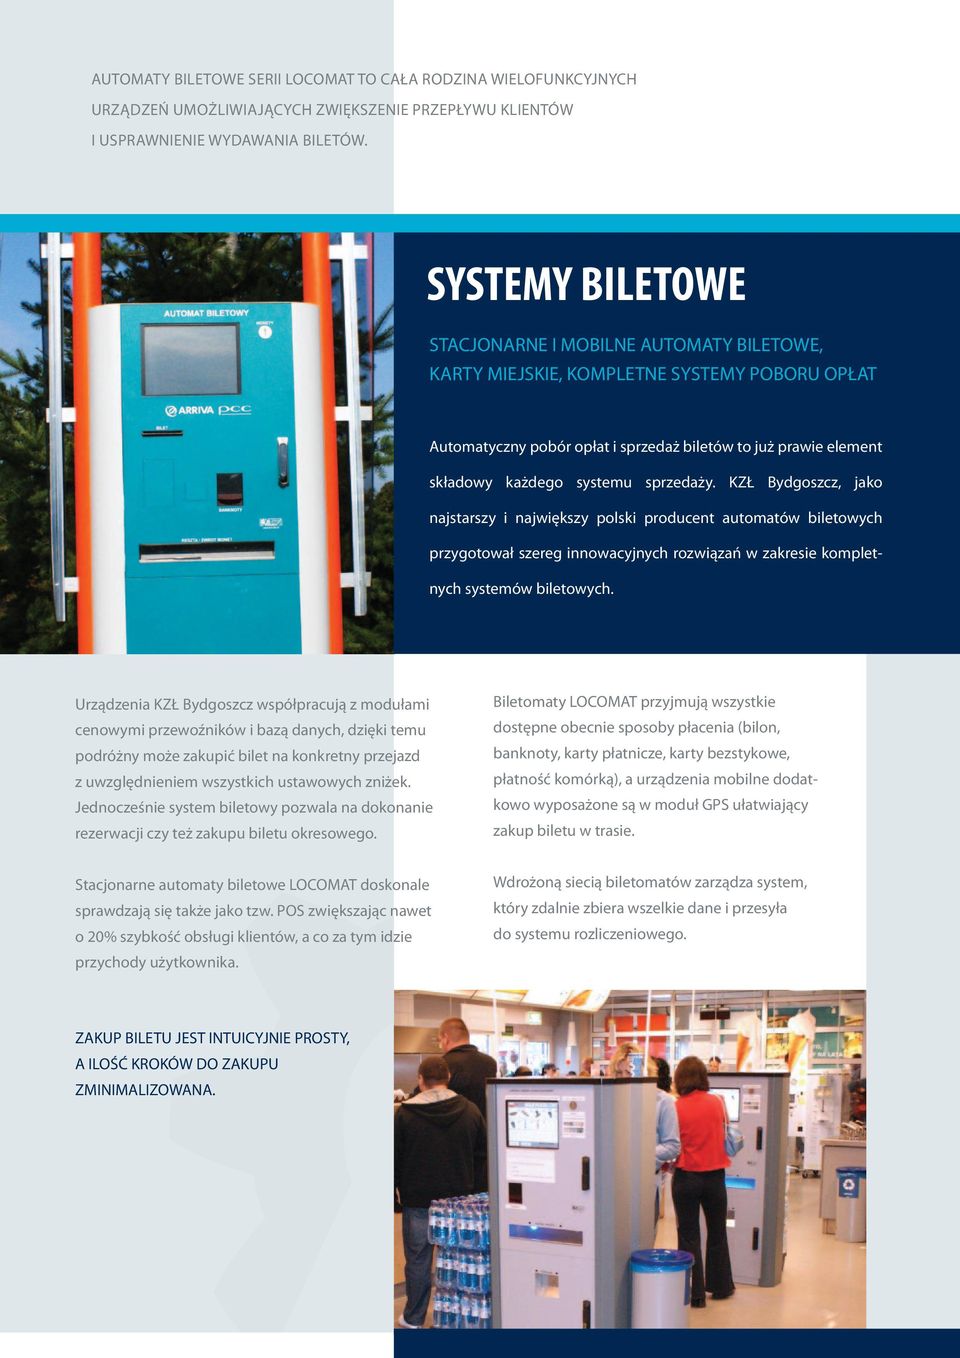 sprzedaży. KZŁ Bydgoszcz, jako najstarszy i największy polski producent automatów biletowych przygotował szereg innowacyjnych rozwiązań w zakresie kompletnych systemów biletowych.